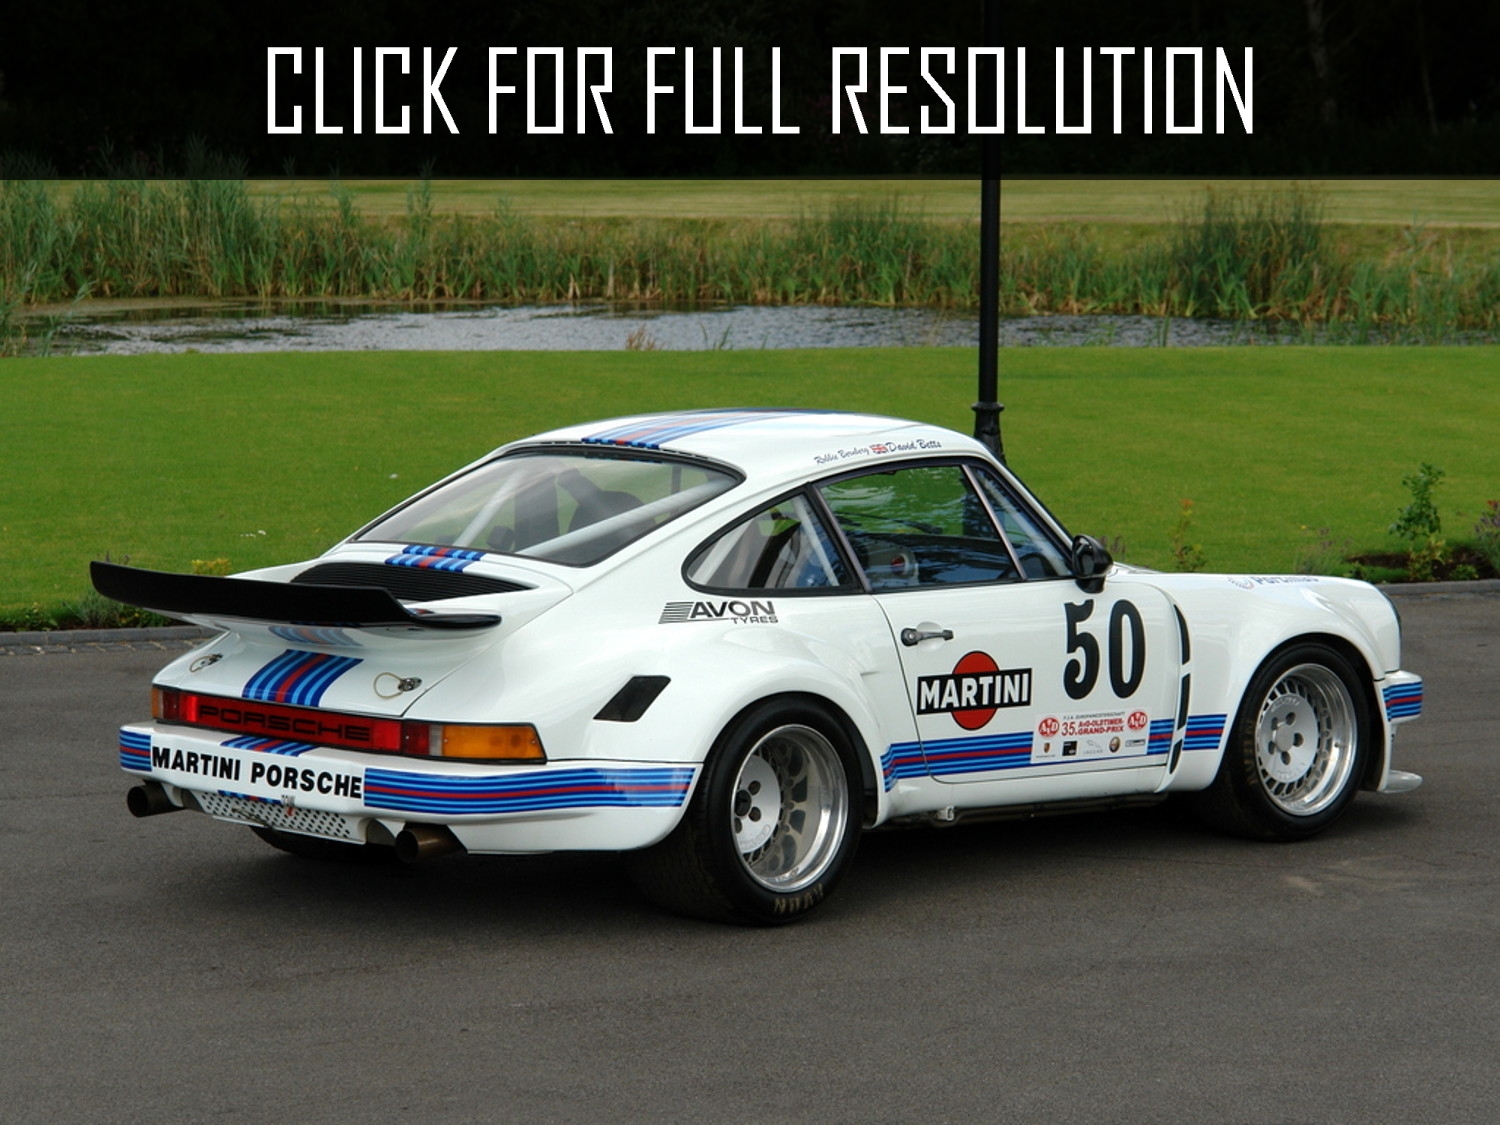 1974 Porsche 911 Rsr